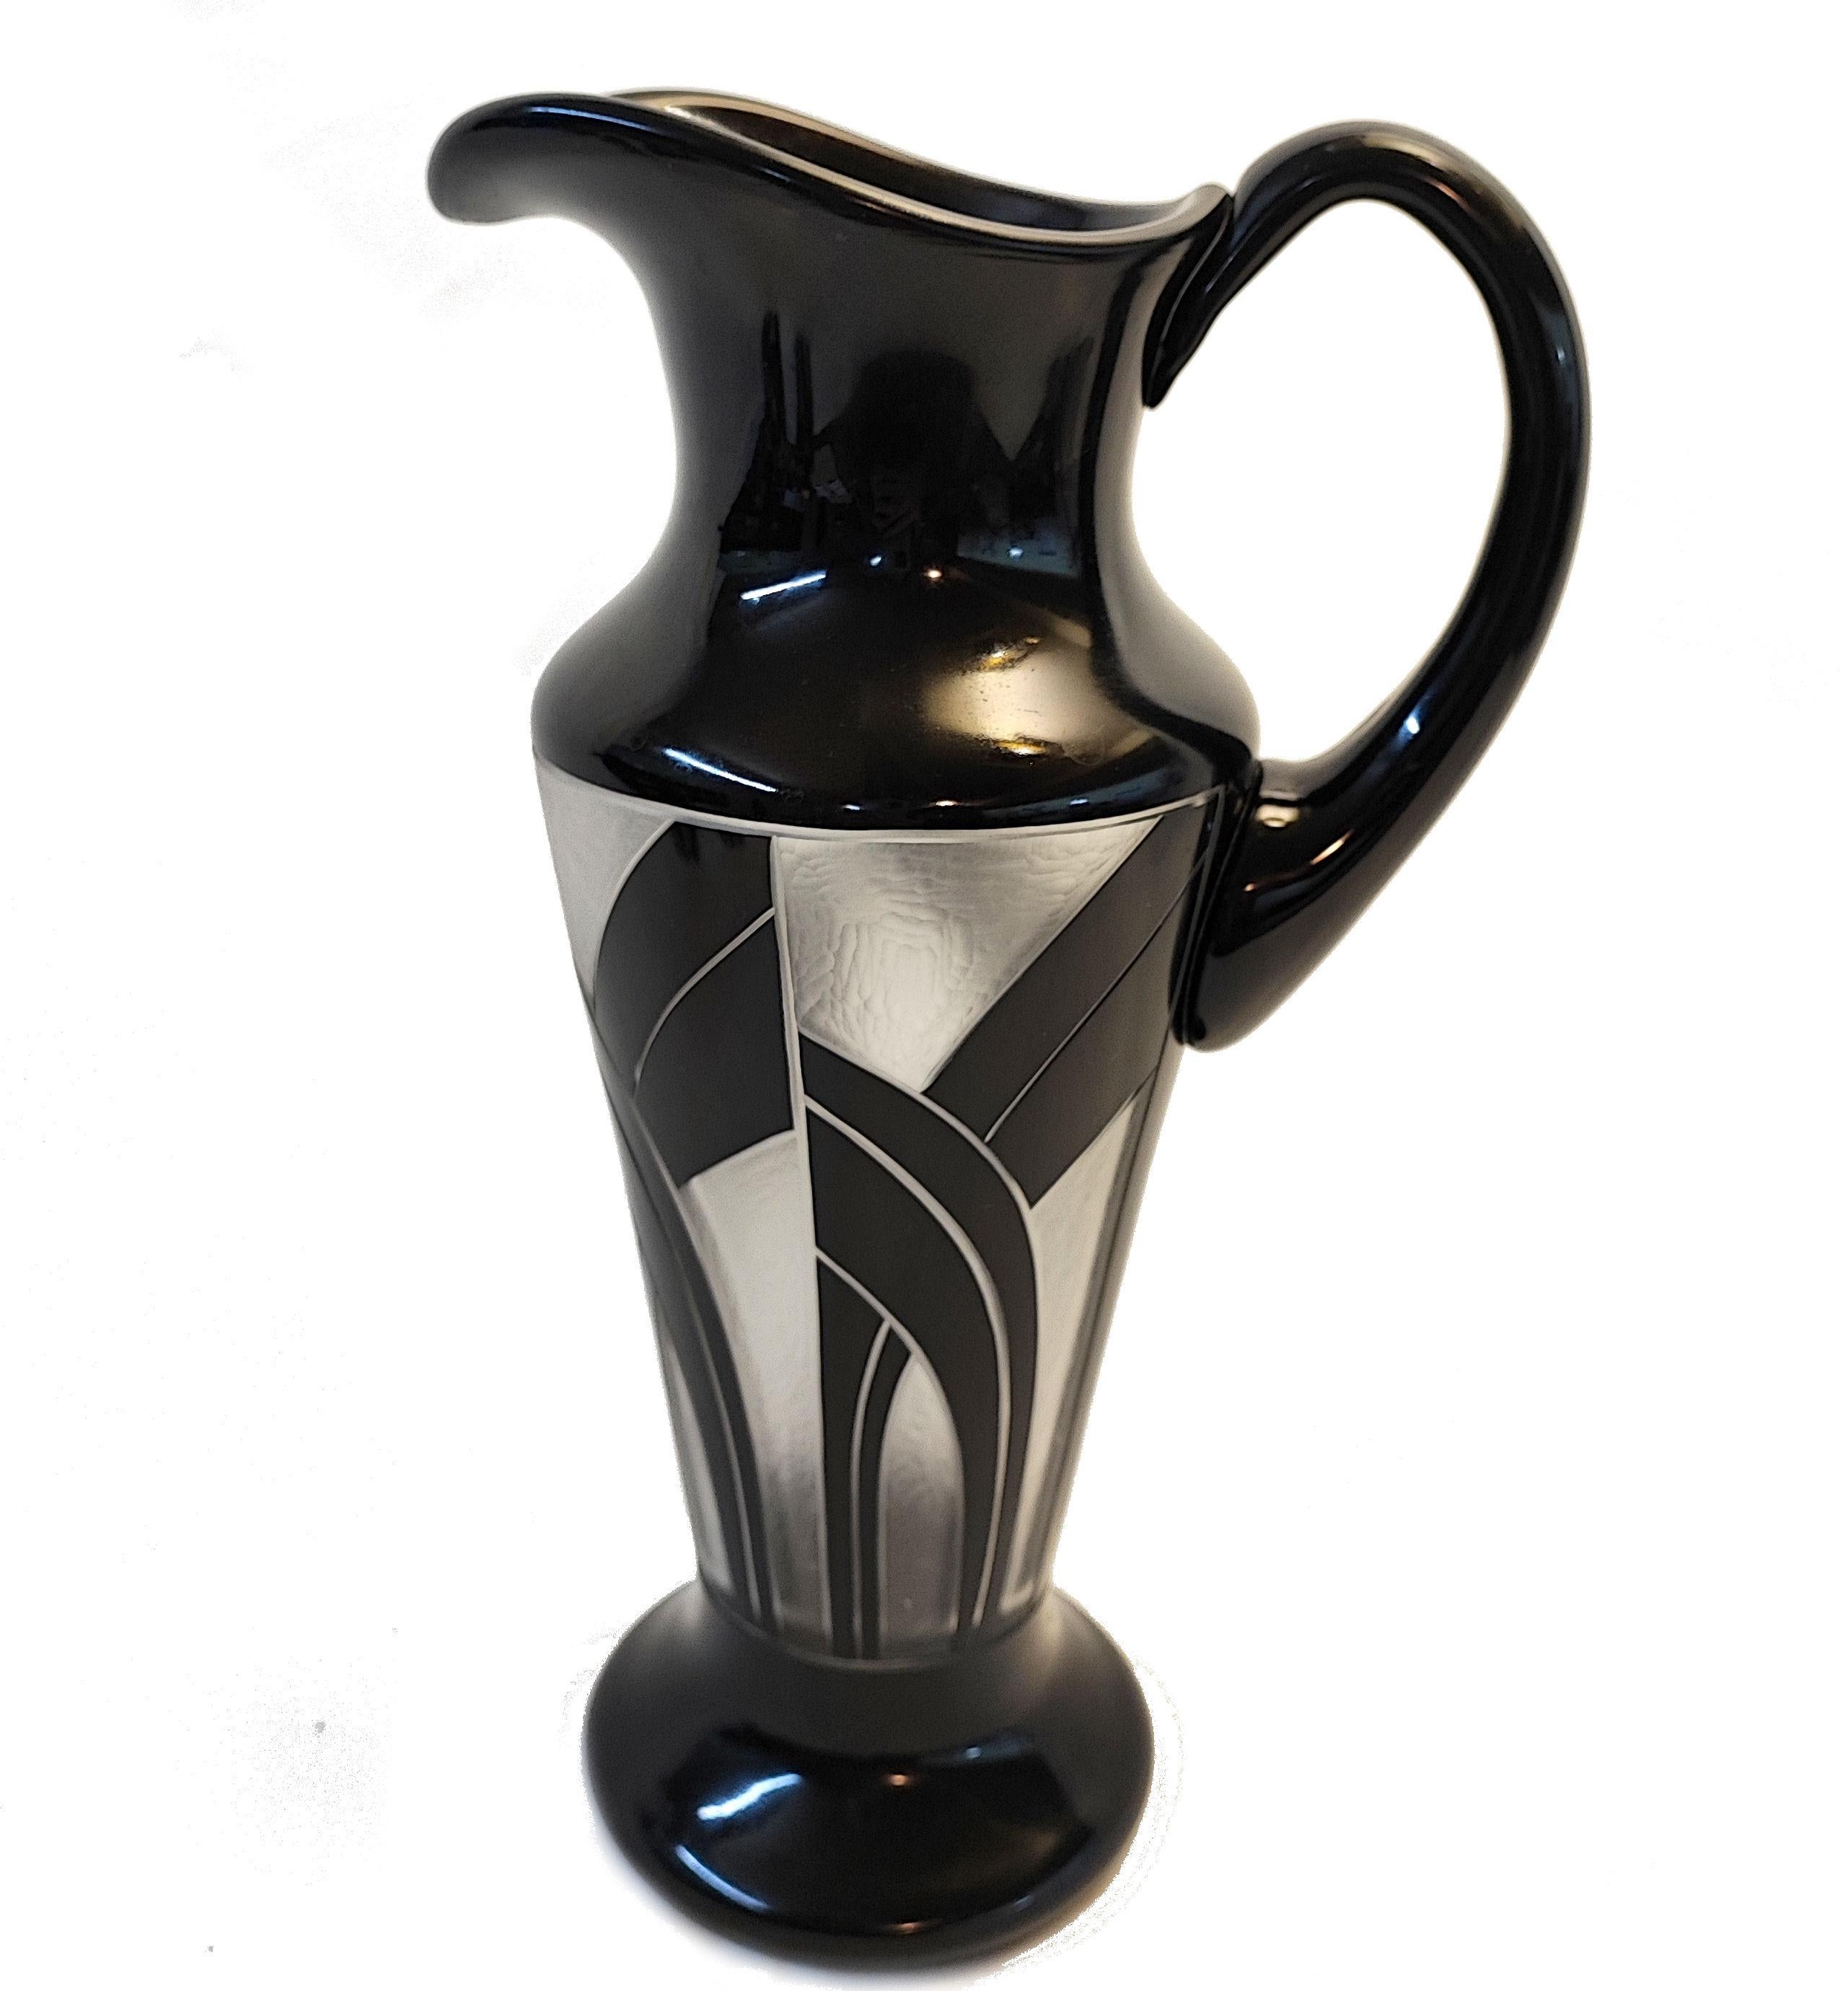 Sehr hochwertiges, sehr auffällig aussehendes tschechisches Art-Déco-Glas-Cocktailset aus den 1930er Jahren. Mit einem Kristallkrug in klassischer Form und sechs passenden Gläsern (Höhe 8 cm, Durchmesser 6 cm). Das gesamte Set ist schwarz